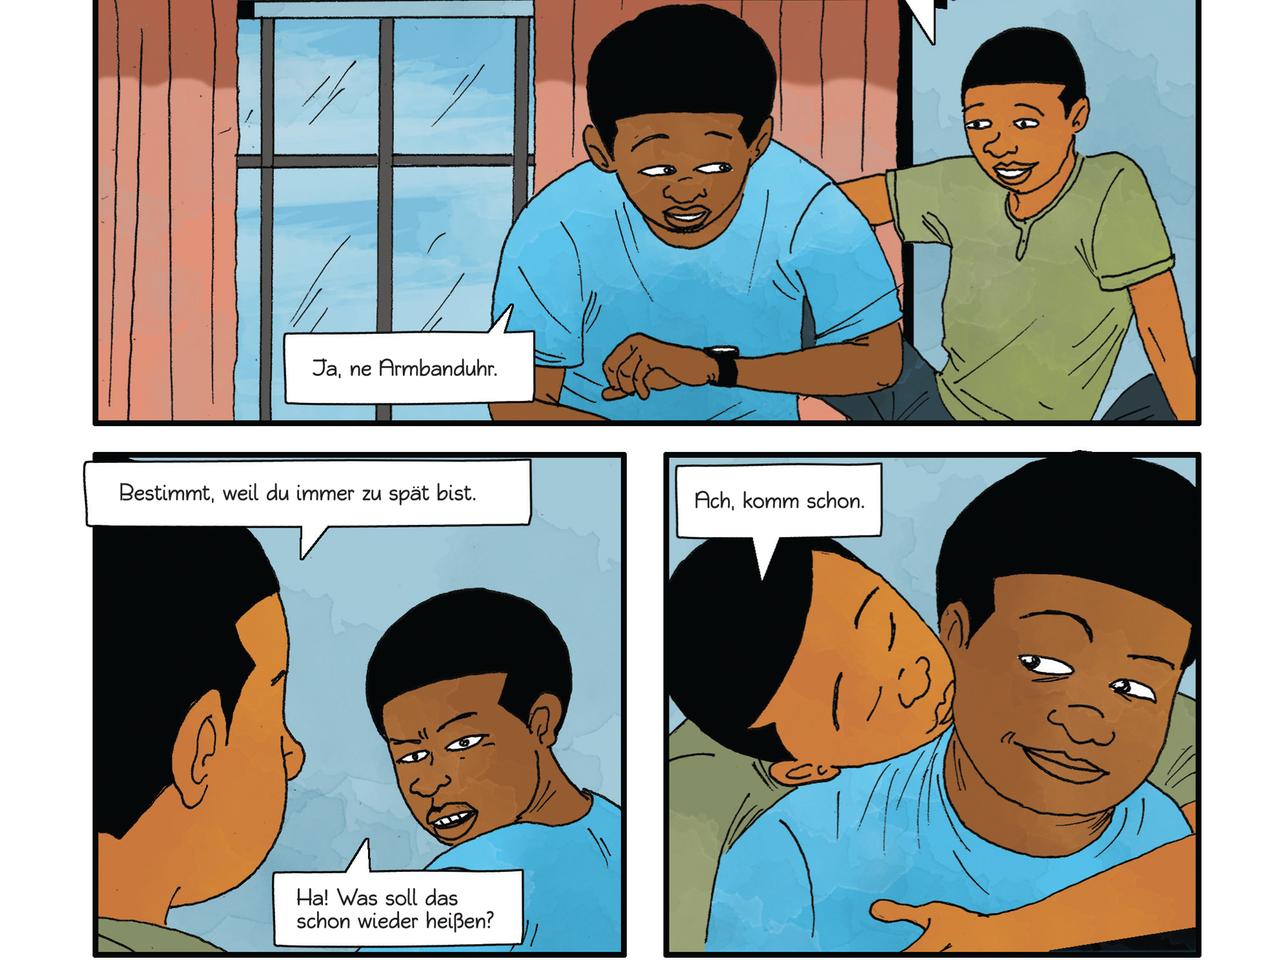 Auszüge aus der Graphic Novel "Lagos - Leben in Suburbia", mit Texten von Elnathan John und Illustrationen von Àlàbá Ònájin.